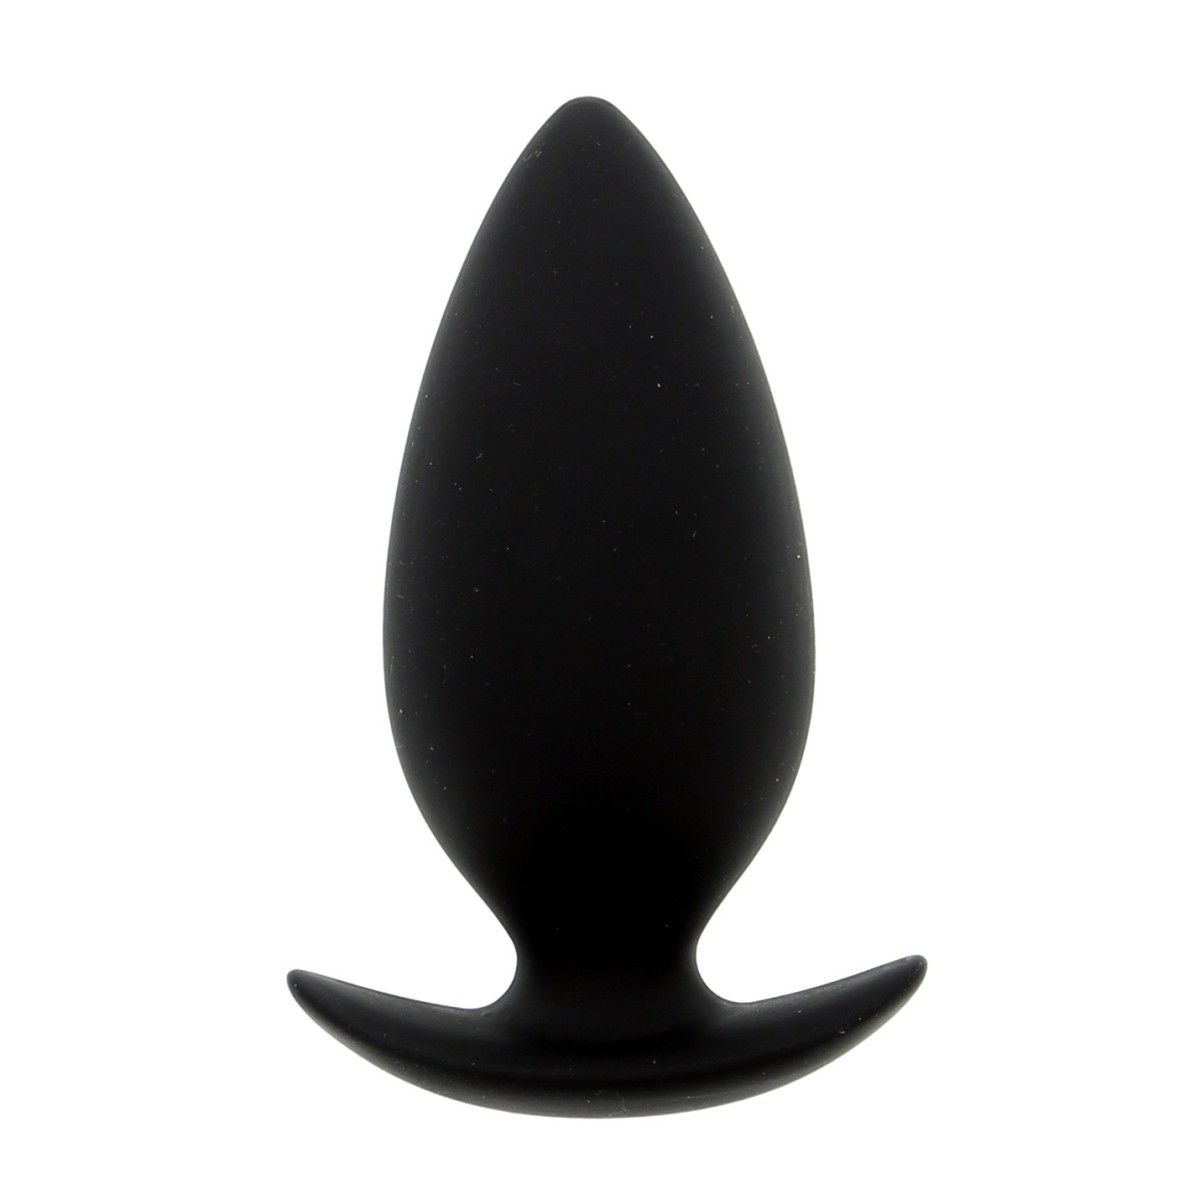 Dream Toys Cheeky Love Anal Plug Medium Black, černý silikonový anální kolík 10,5 x 4,5 cm